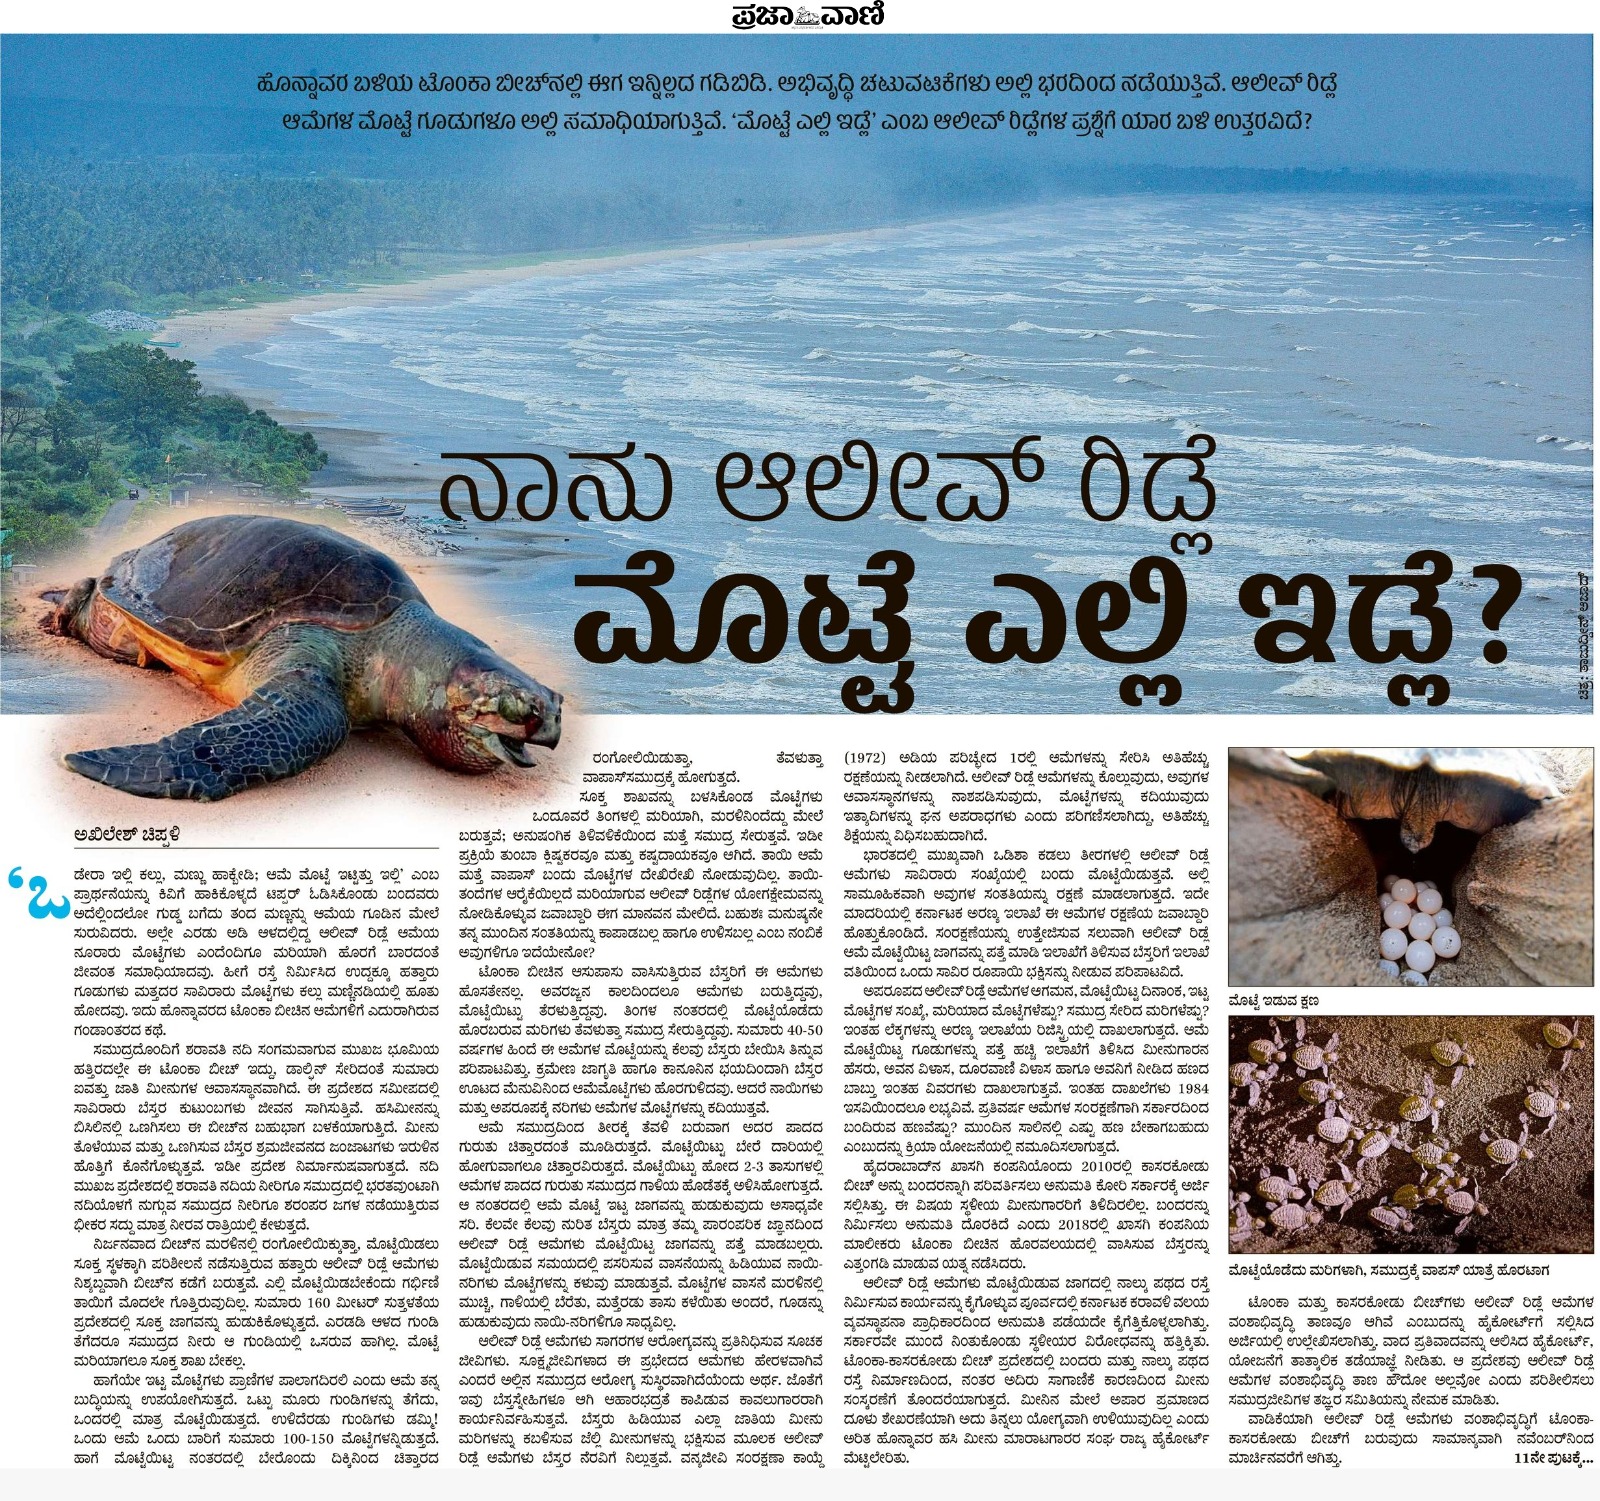 Prajavani writes about Olive Ridley Turtles at Tonka, Honavar